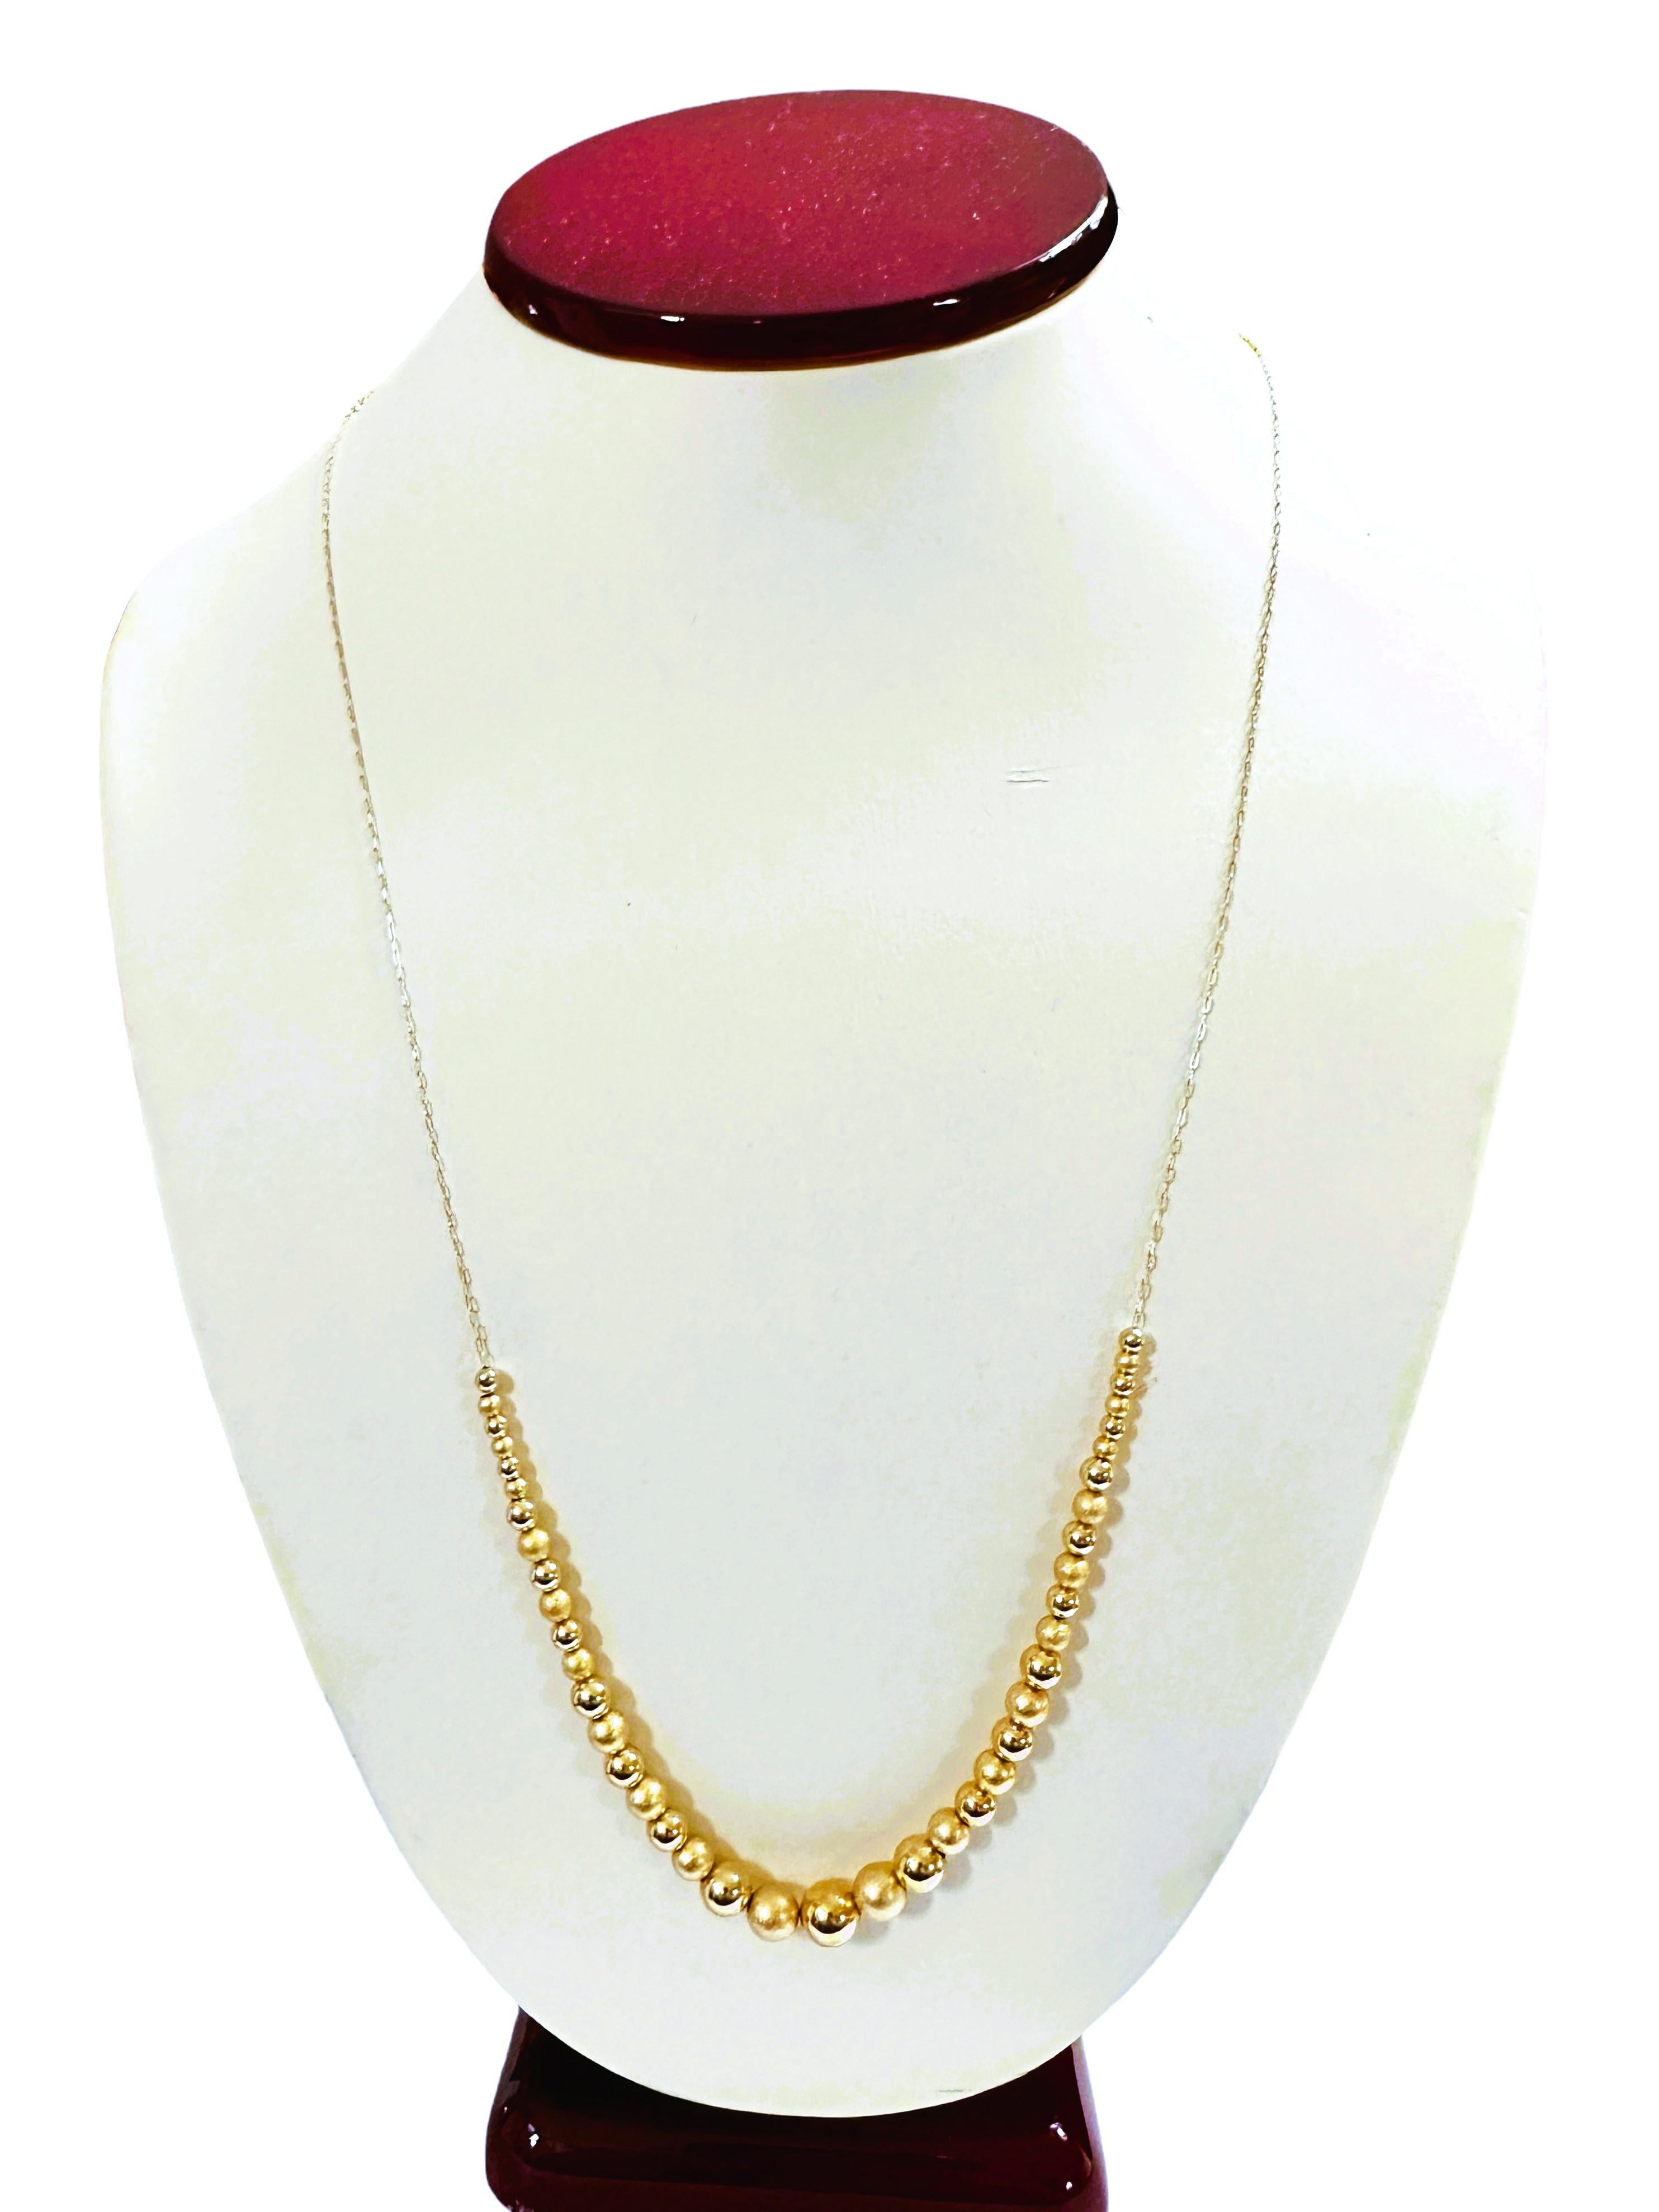 Was für eine schöne Halskette.  Die Perlen wechseln zwischen hochglanzpoliertem Gold und mattem Gold, was ihm ein wunderschönes Aussehen verleiht.  Für die Frauen, die längere Halsketten lieben, ist dies perfekt für Sie.  Die Halskette ist 24 Zoll